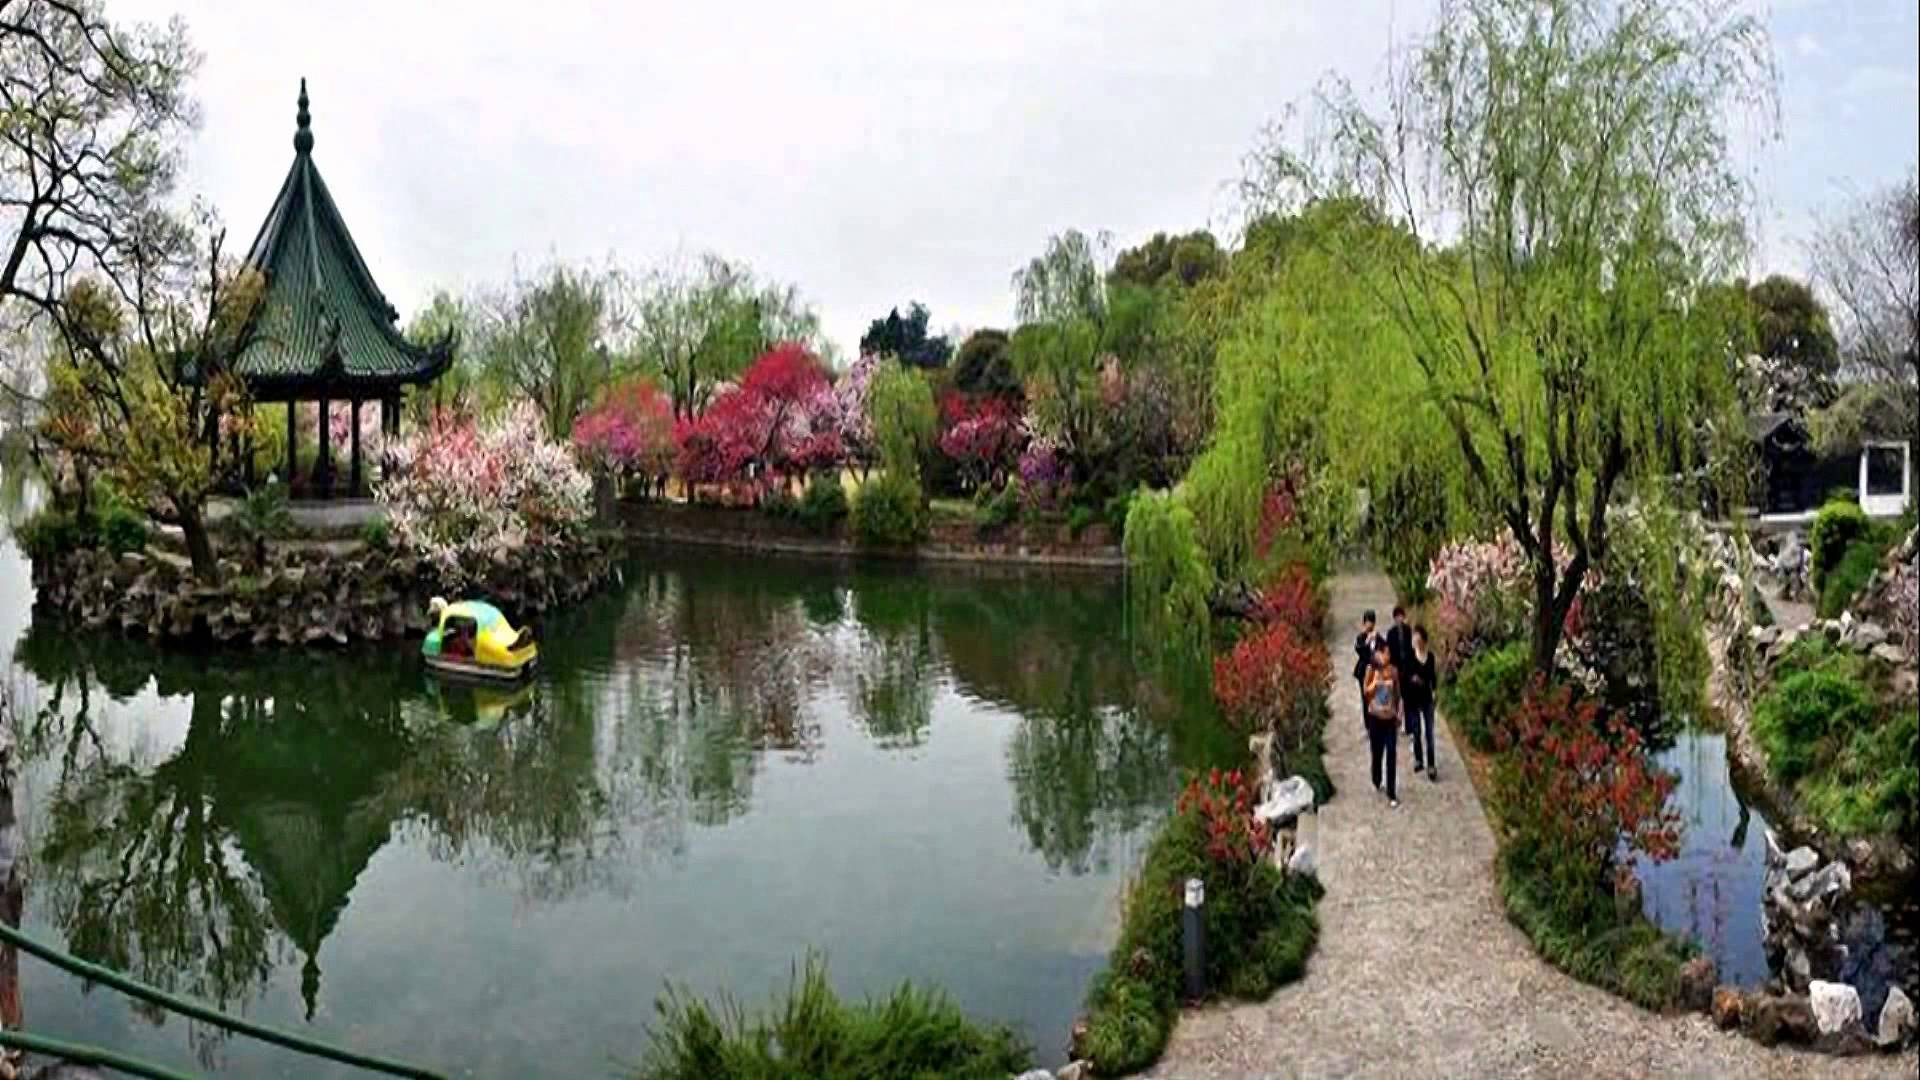 So Beautiful Landscape - China (HD1080p) - YouTube